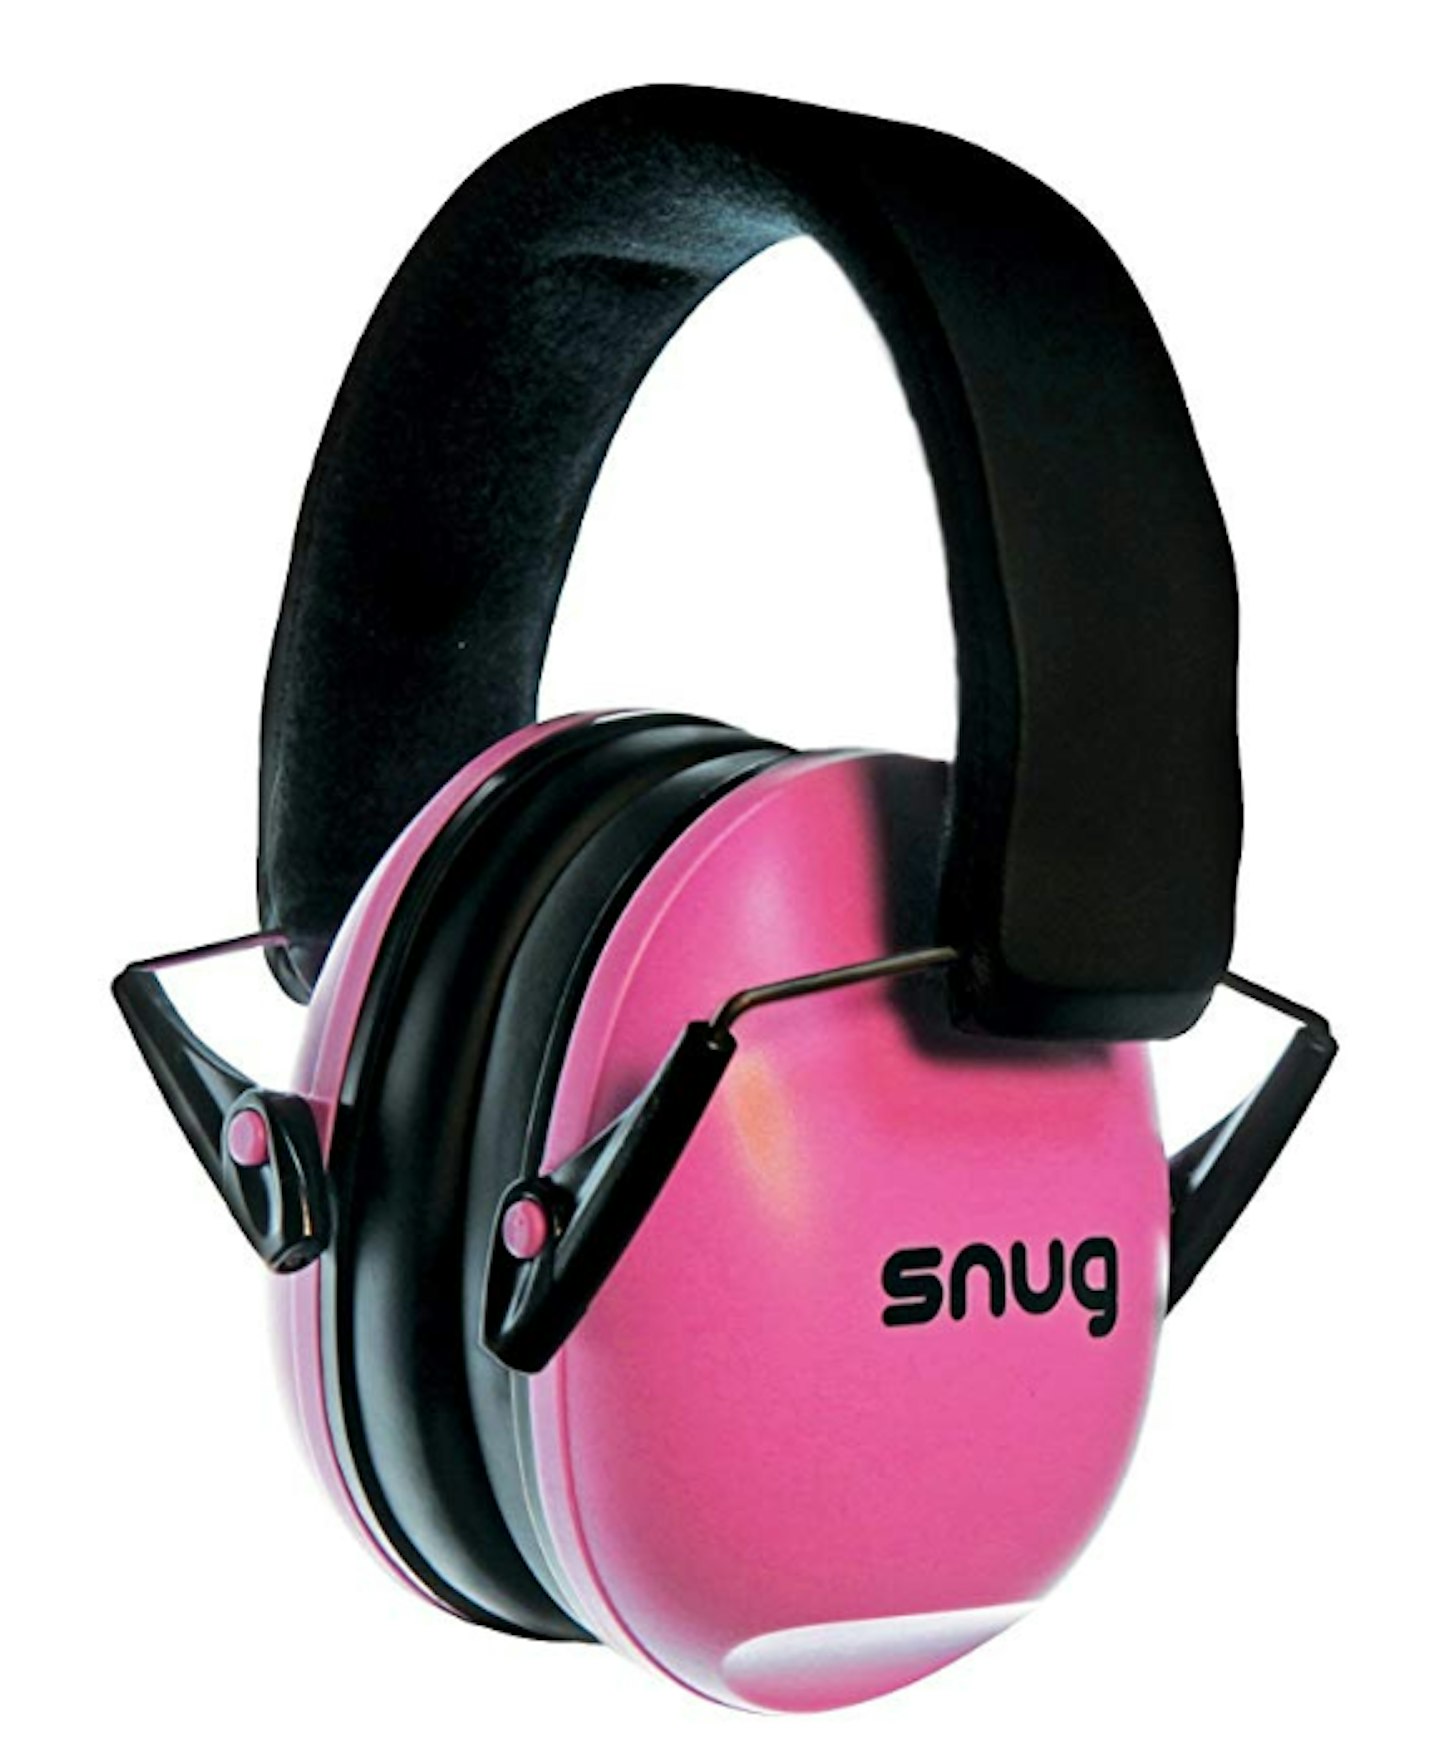 Snug Safe n Sound Kids Ear Protectors